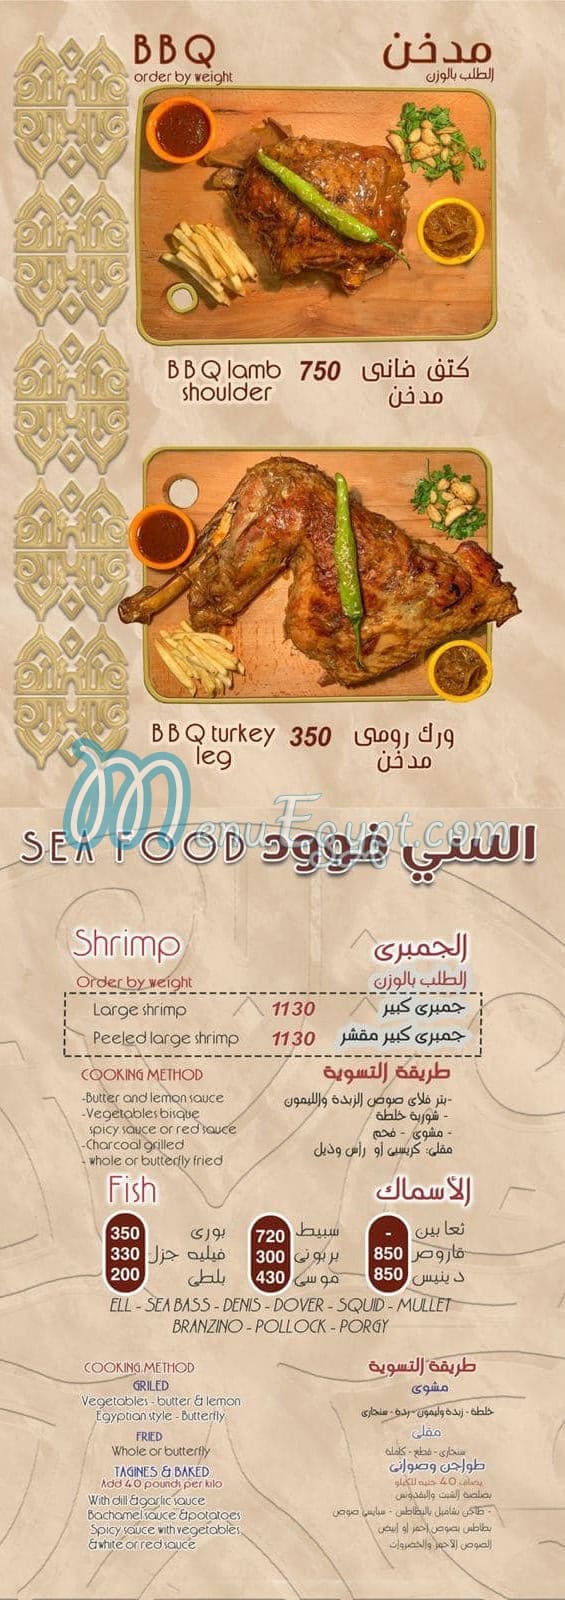 Antar El Kababgy delivery menu